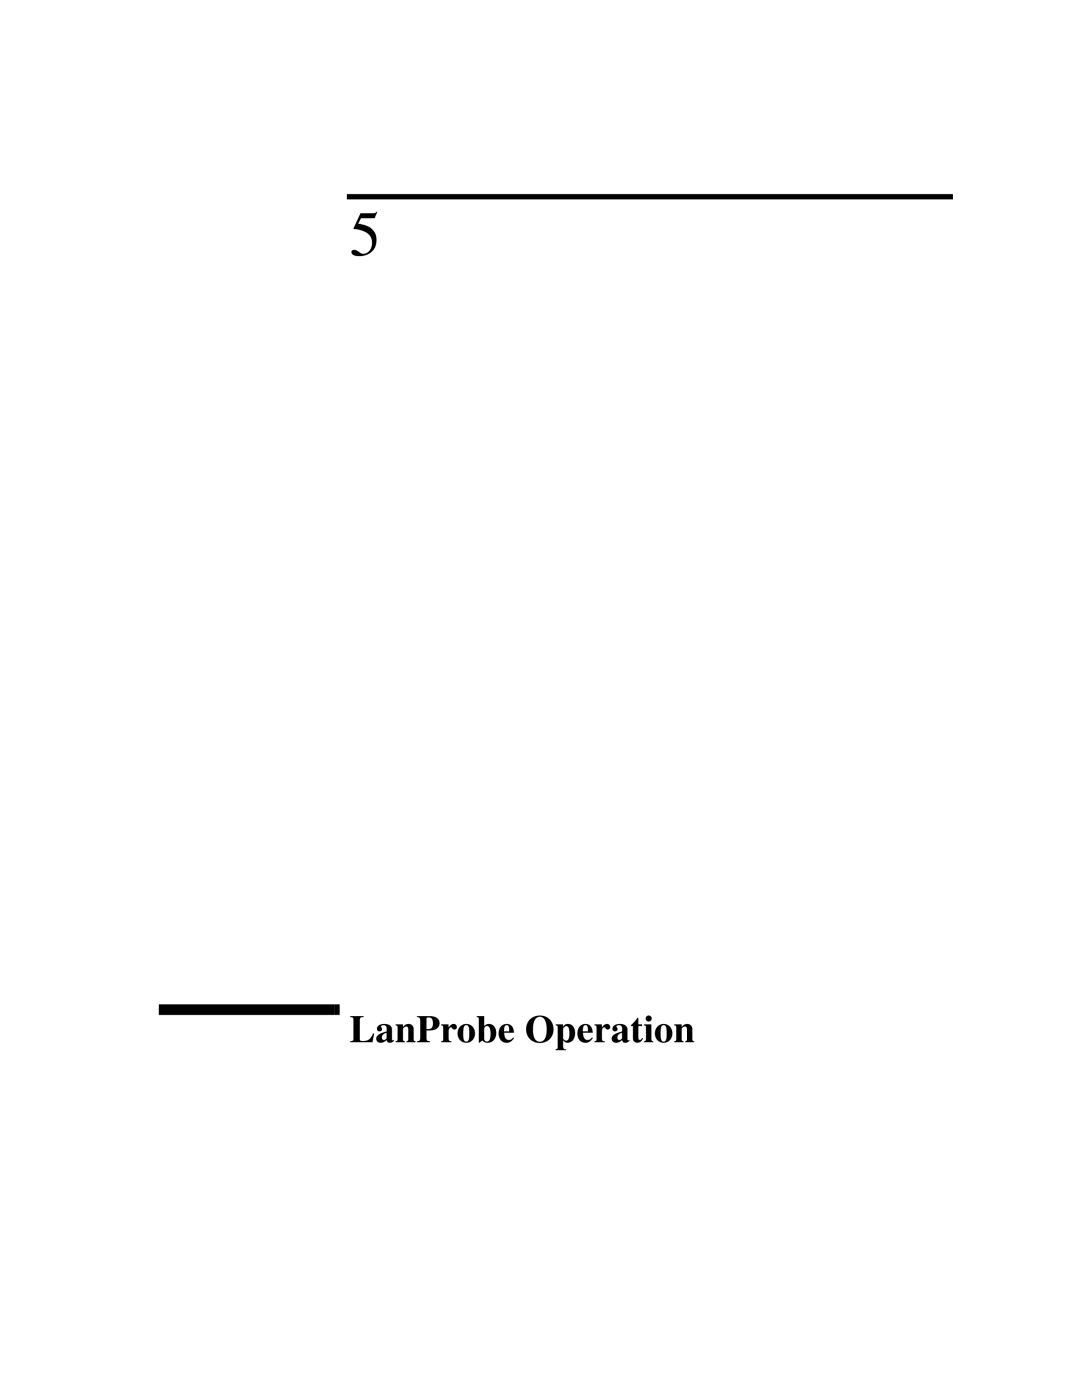 IBM 4986B LanProbe manual LanProbe Operation 